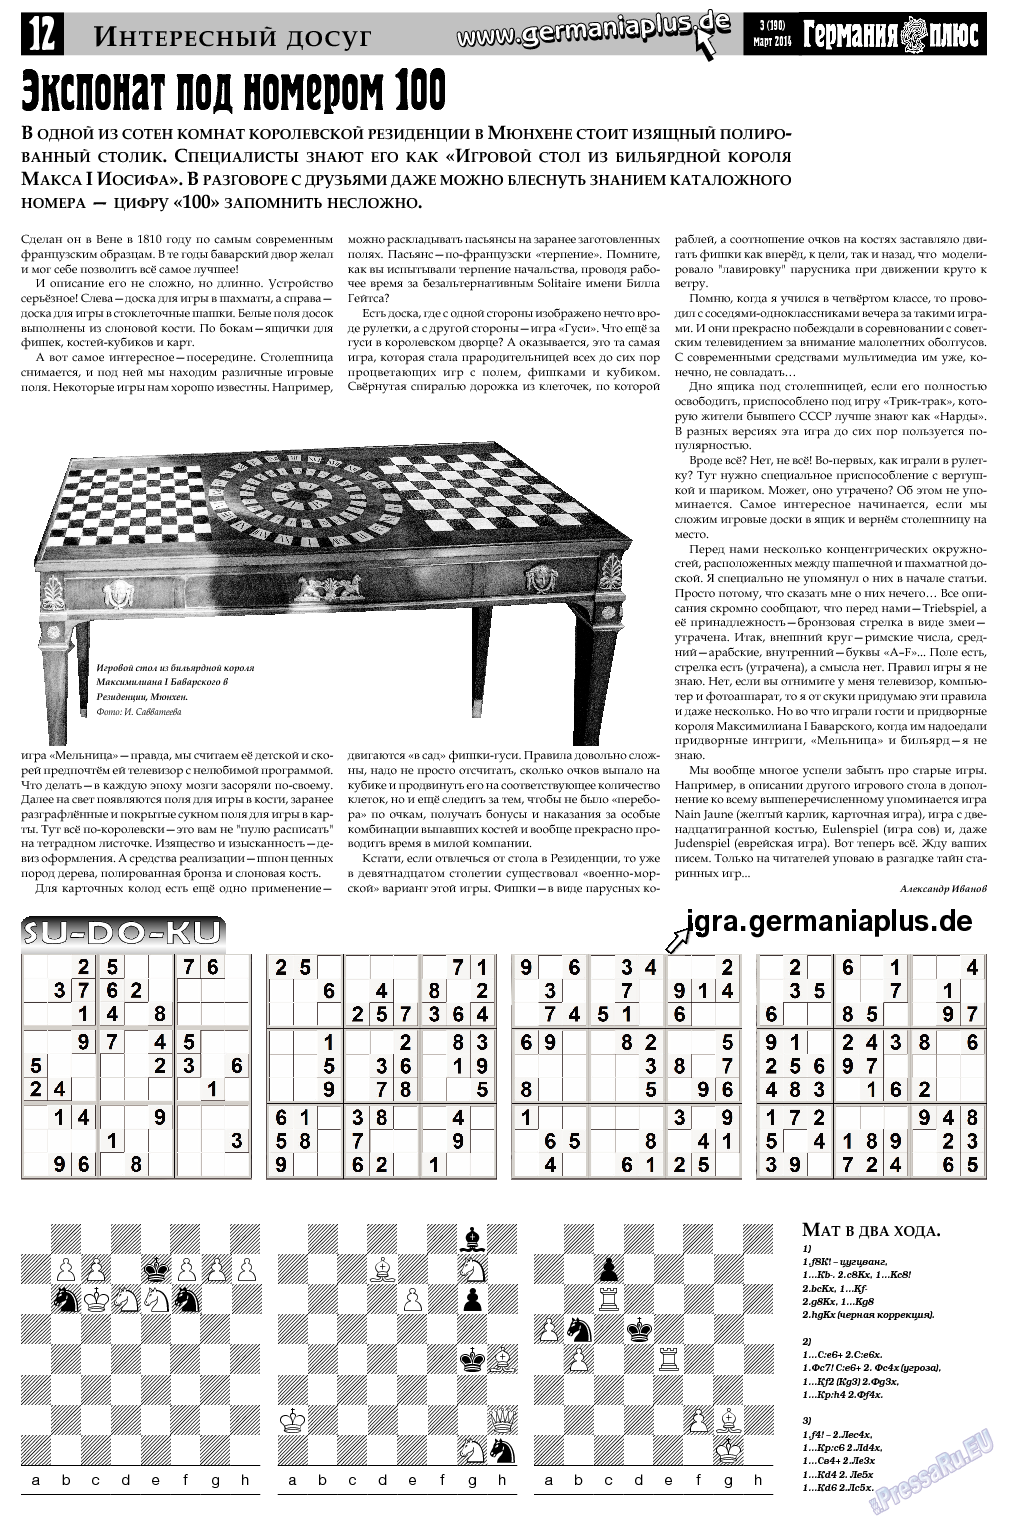 Германия плюс, газета. 2014 №3 стр.12